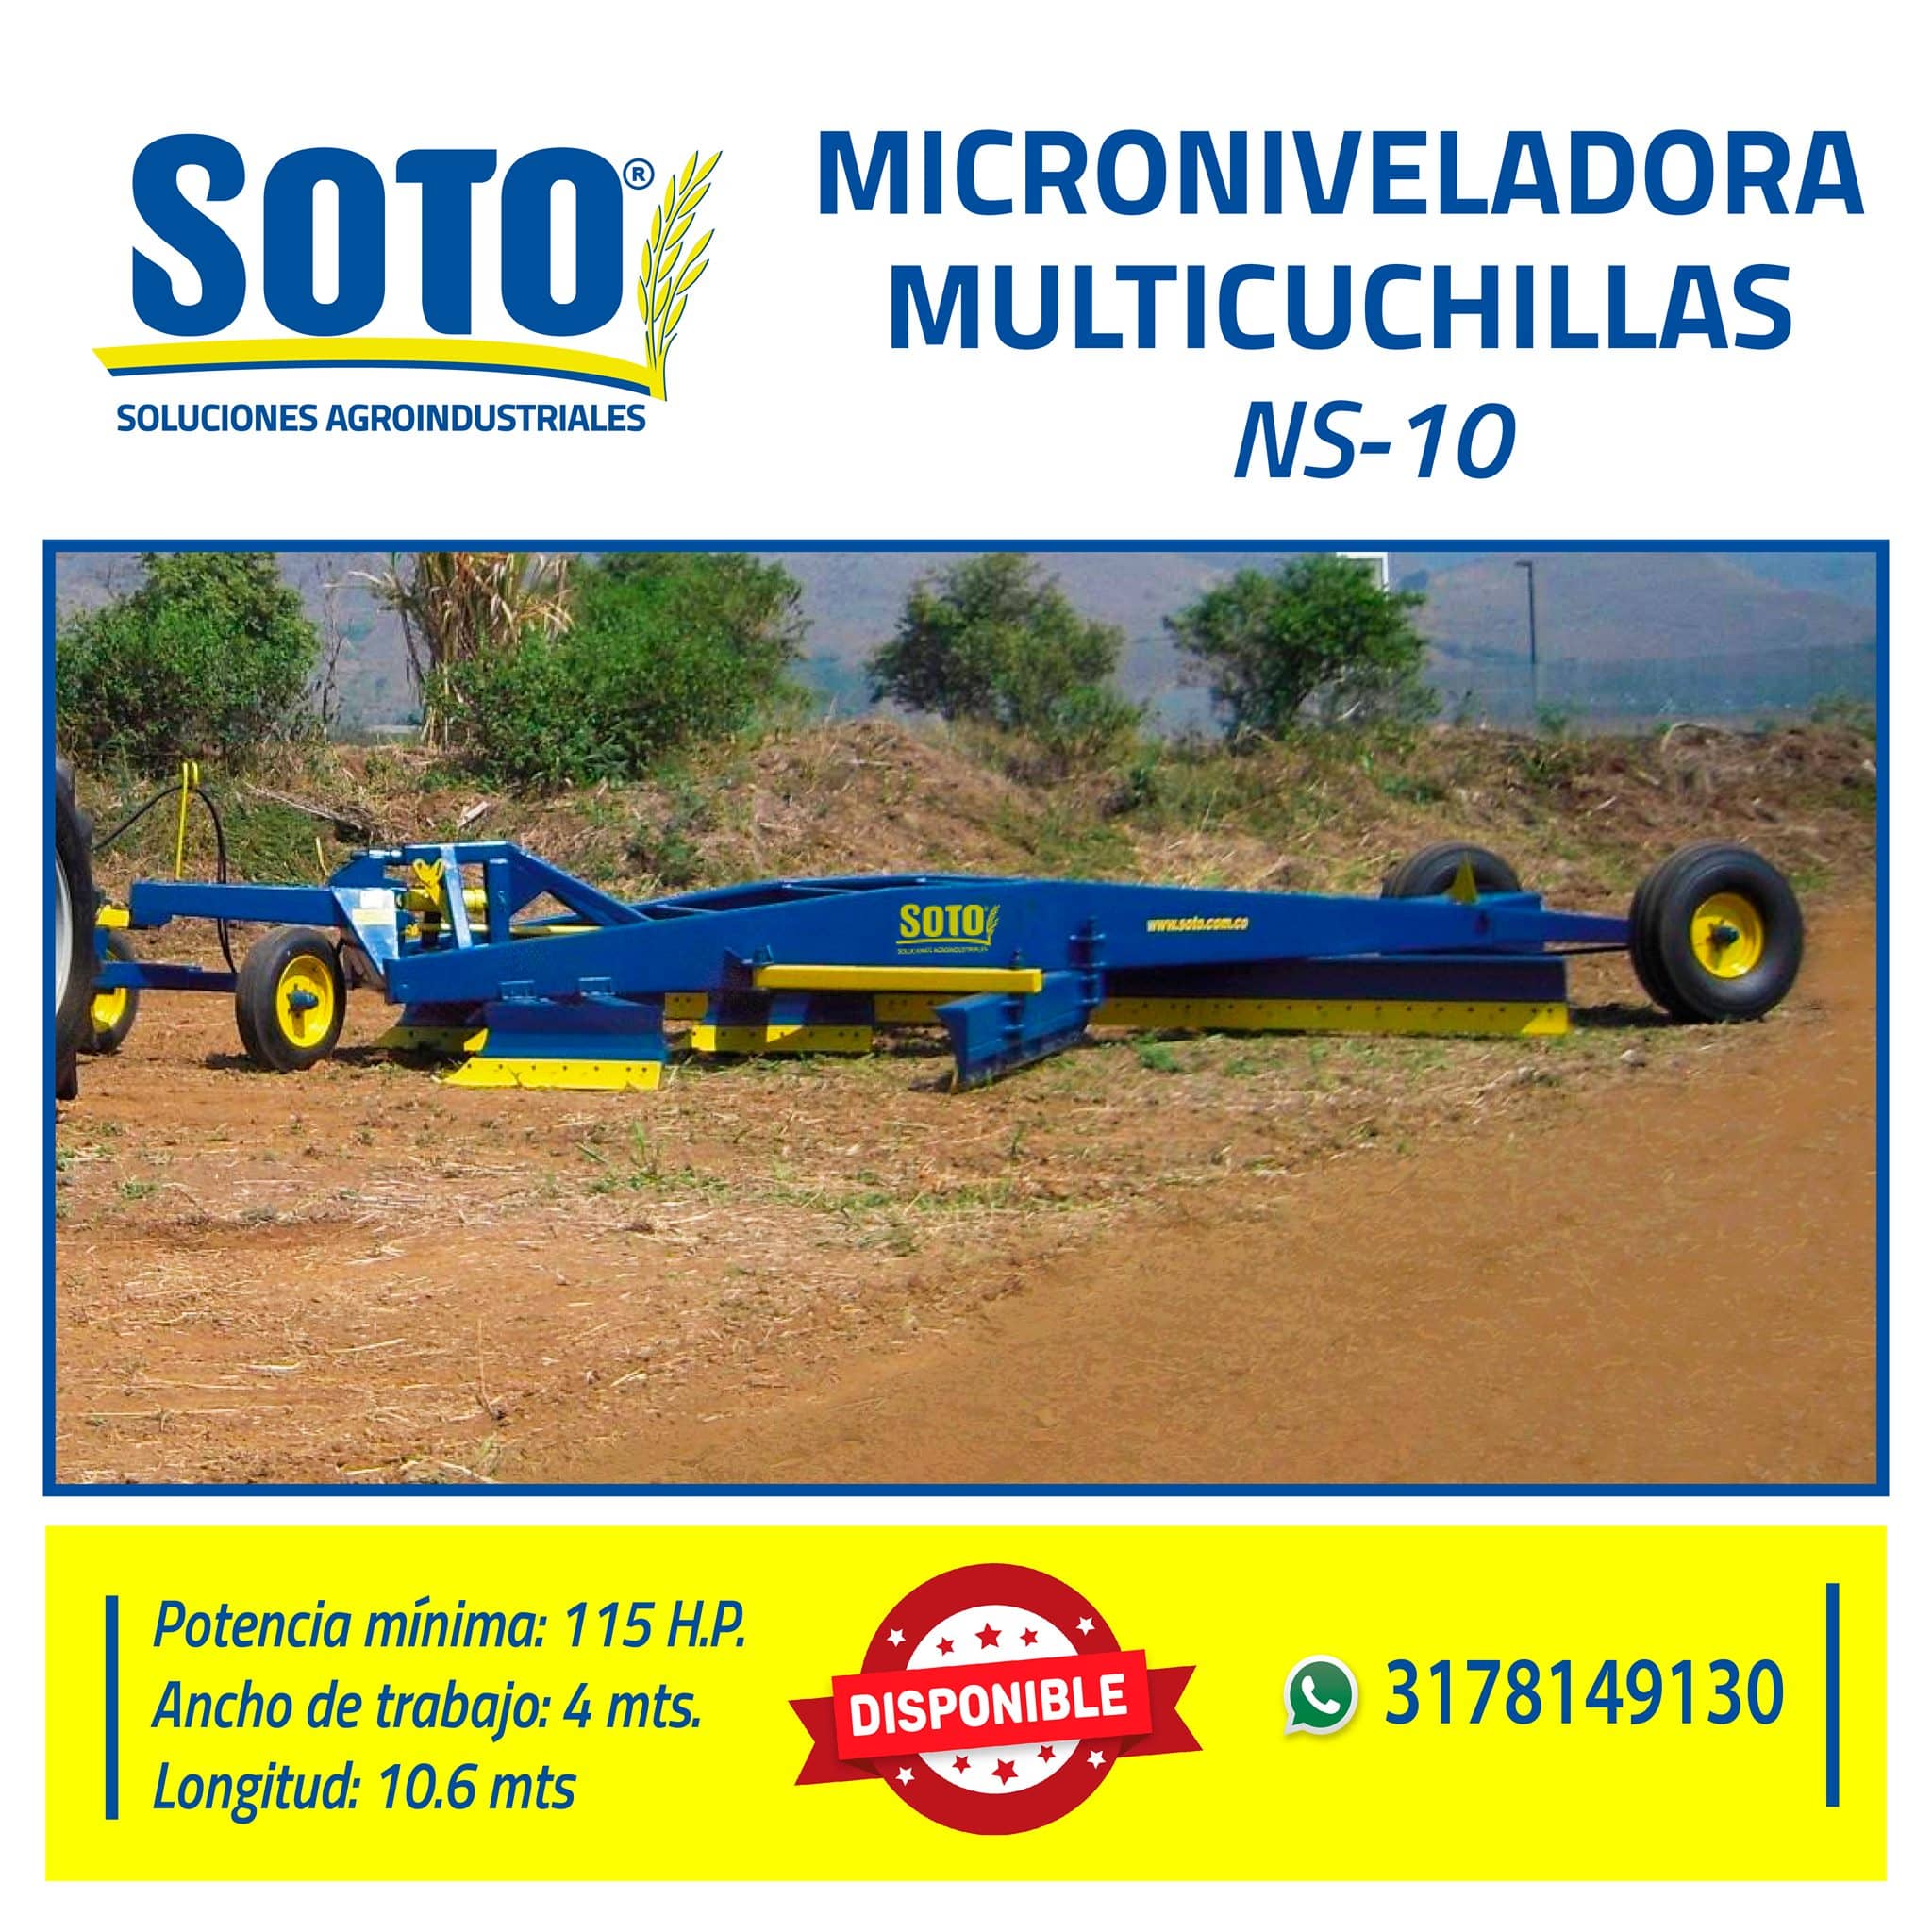 Microniveladora Multicuchillas NS-10